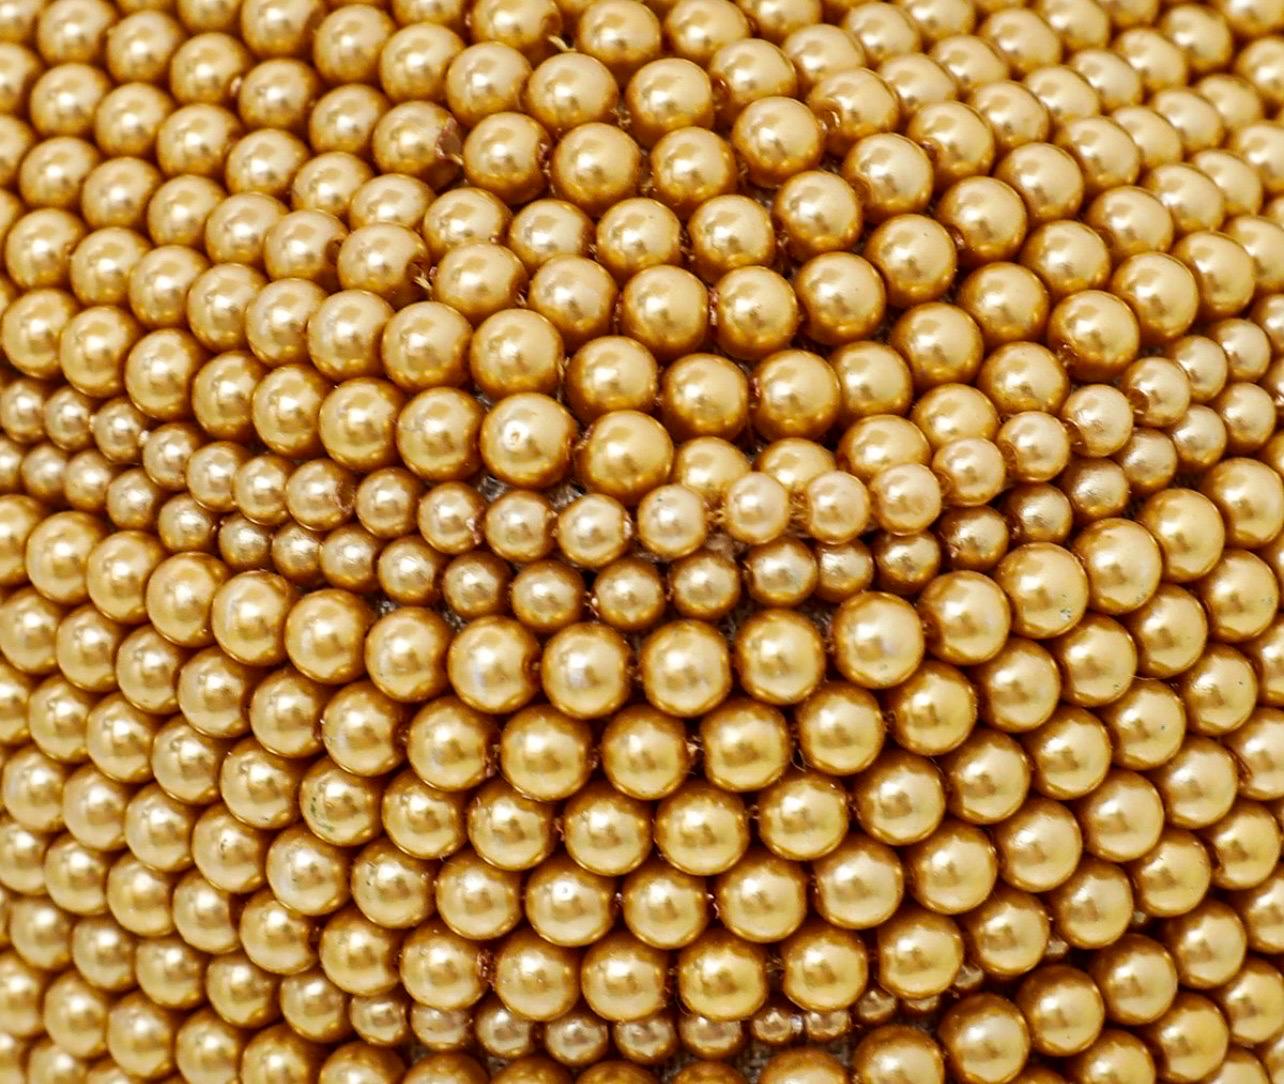 UNWORN Fendi Embroidered Golden Baguette Handbag Flap Bag Clutch - Full Set 10